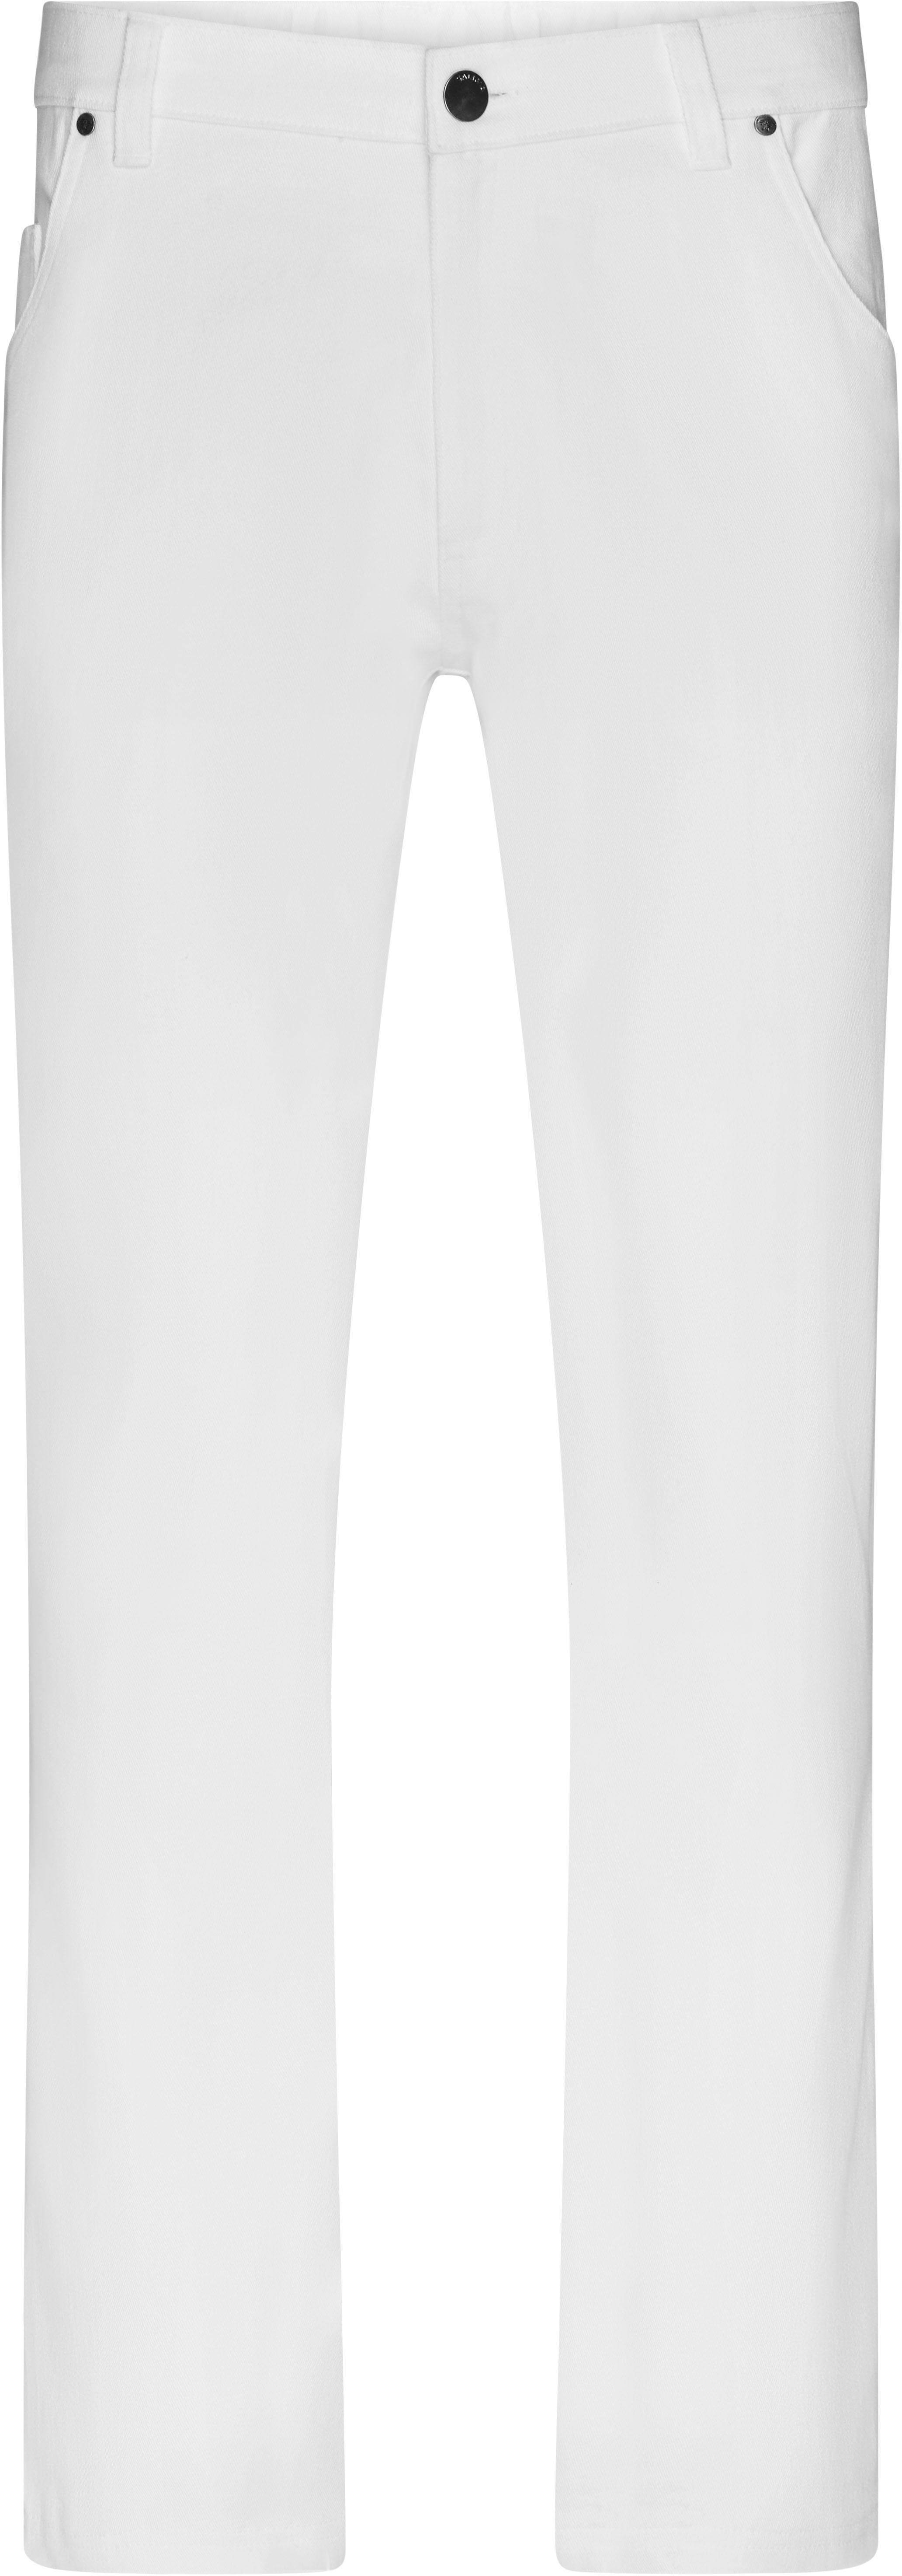 Pánské elastické kalhoty JN 3002 Barva: bílá, Velikost: 46